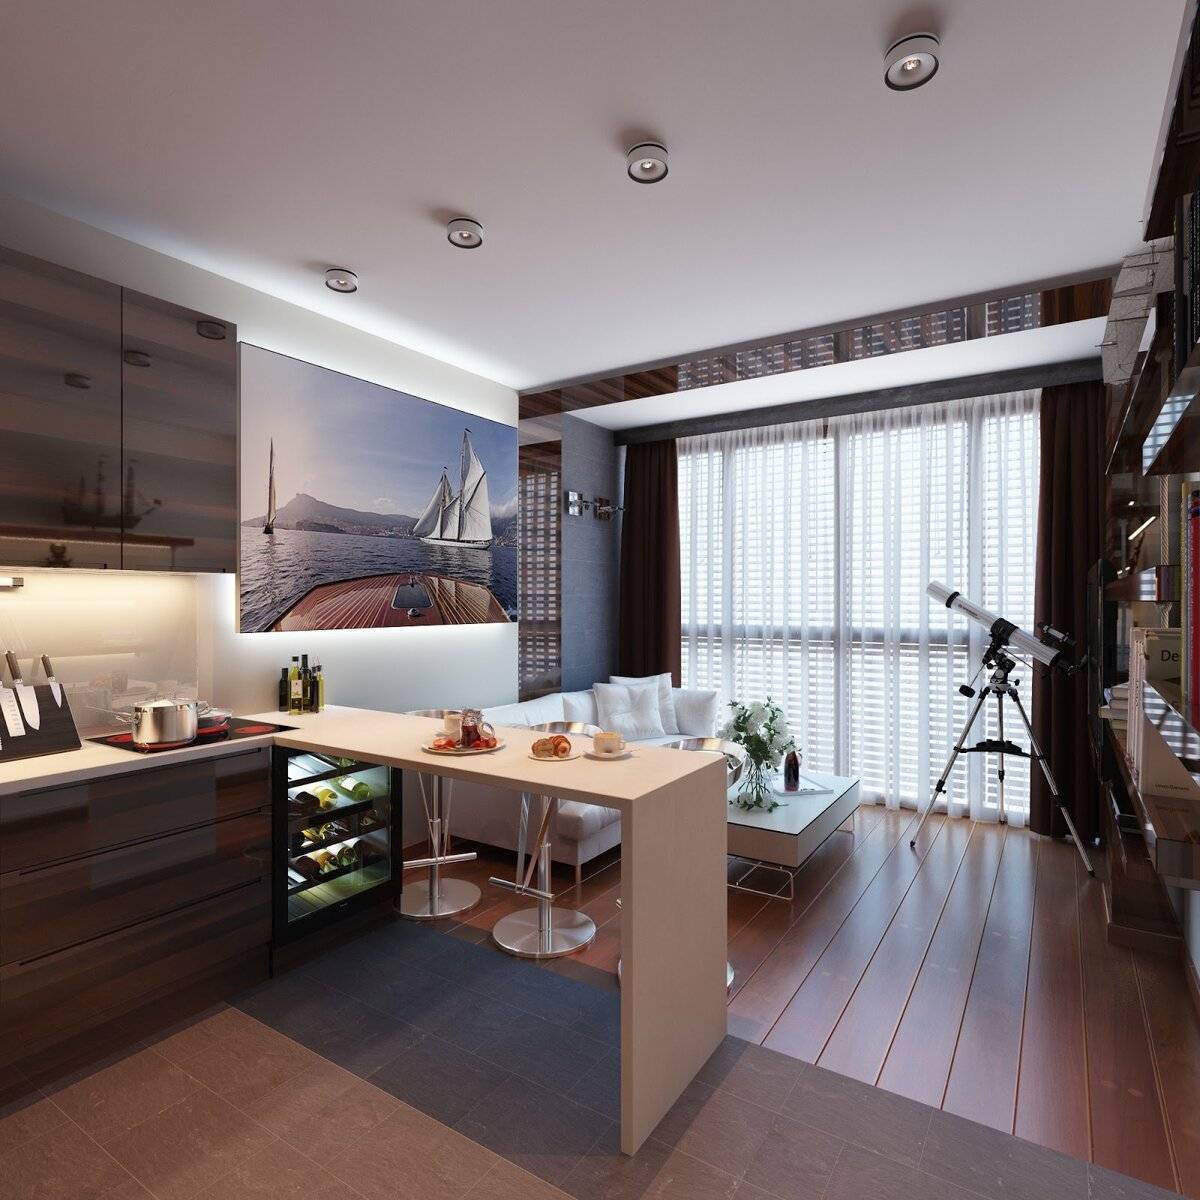 Квартира студия: фото, интерьер, реальные идеи лучших планировок квартир студий, советы по выбору цвета и зонированию